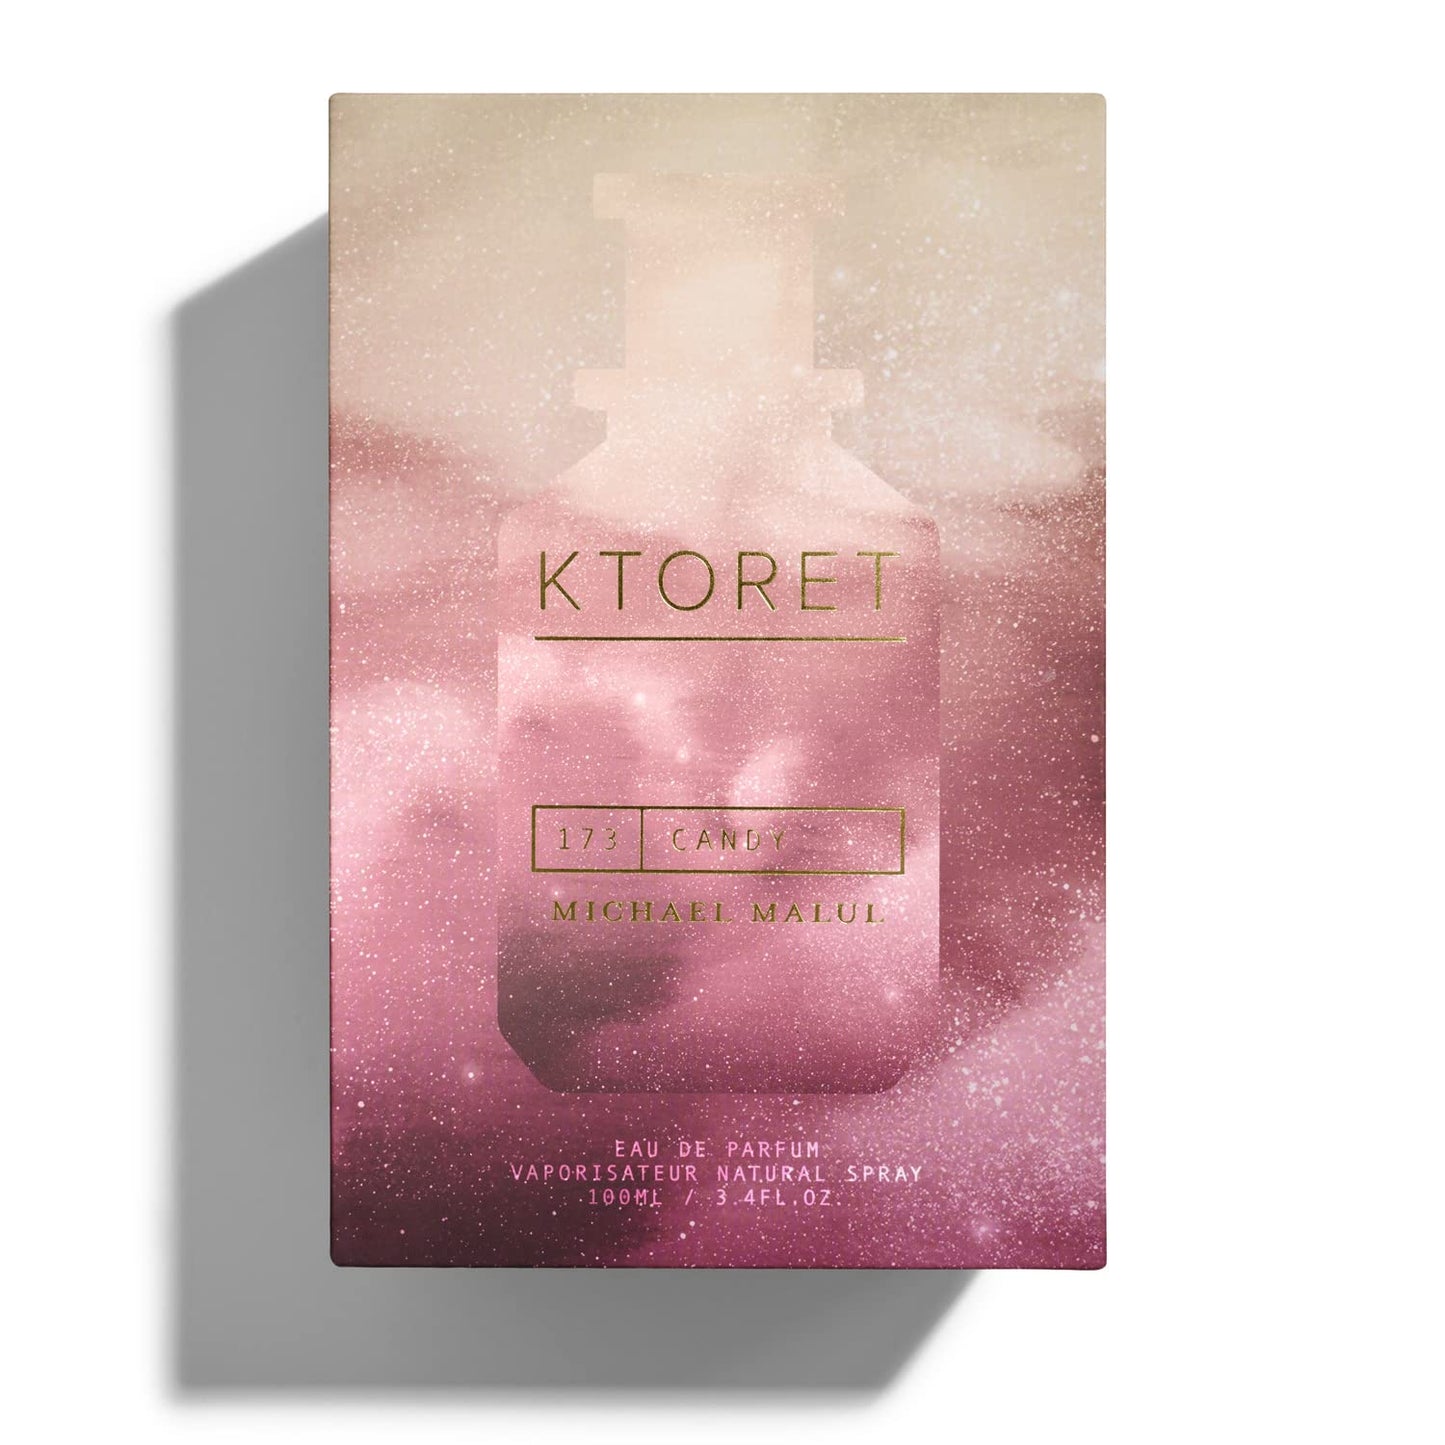 Michael Malul KTORET 173 Candy, Eau De Parfum, Women'S Fragrance, 3.4 Oz 100 Ml